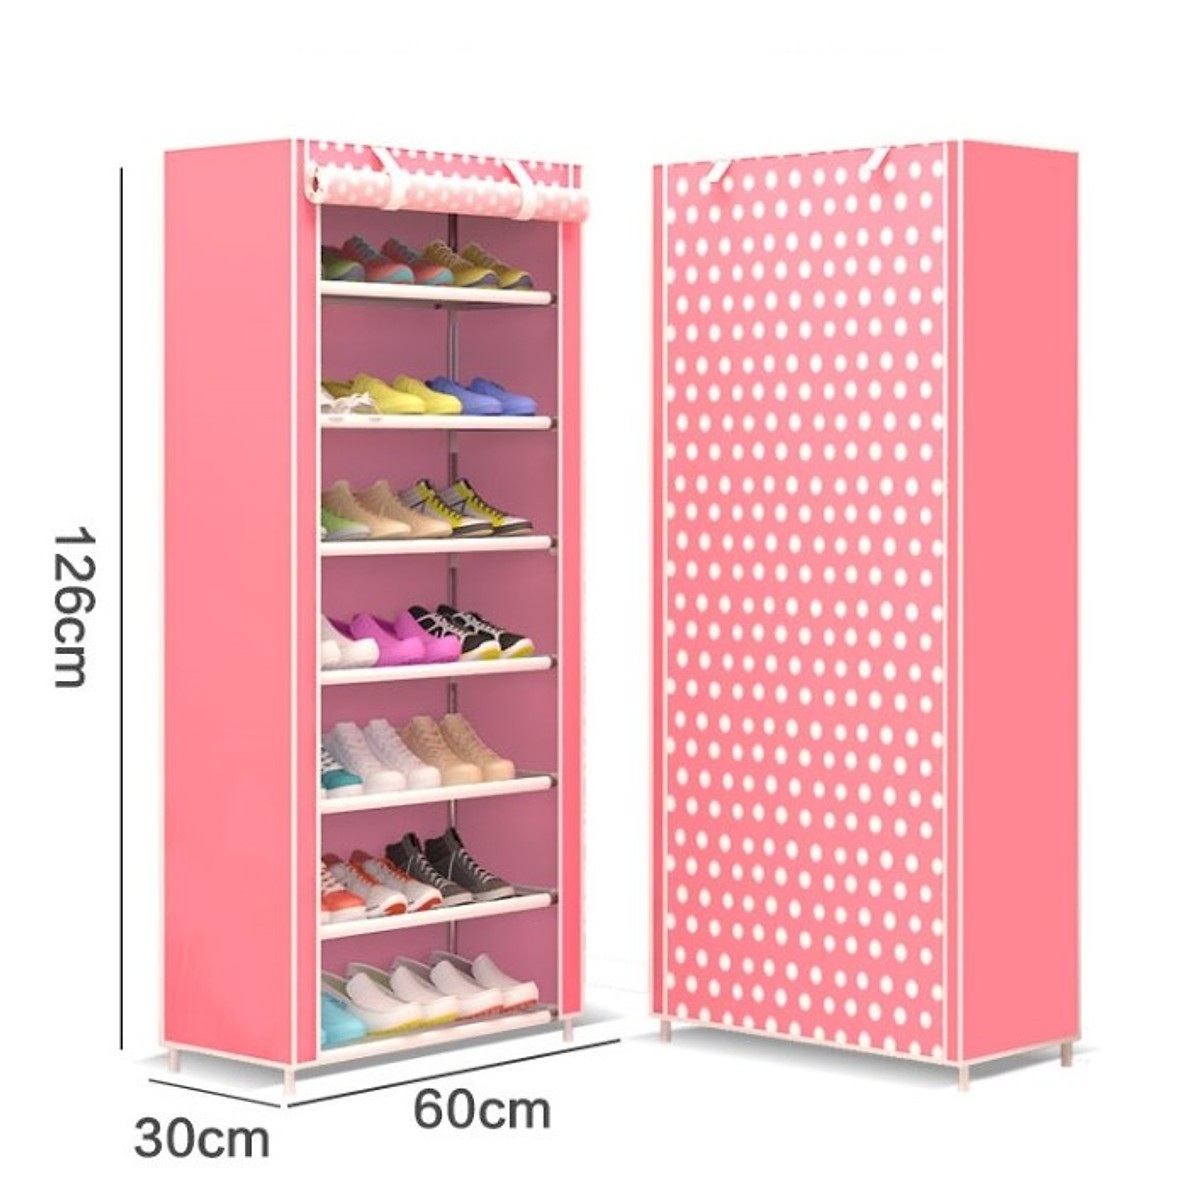 Tủ để giày 7 tầng đa năng, thiết kế nhỏ gọn, dễ dàng di chuyển tới nhiều không gian khác nhau